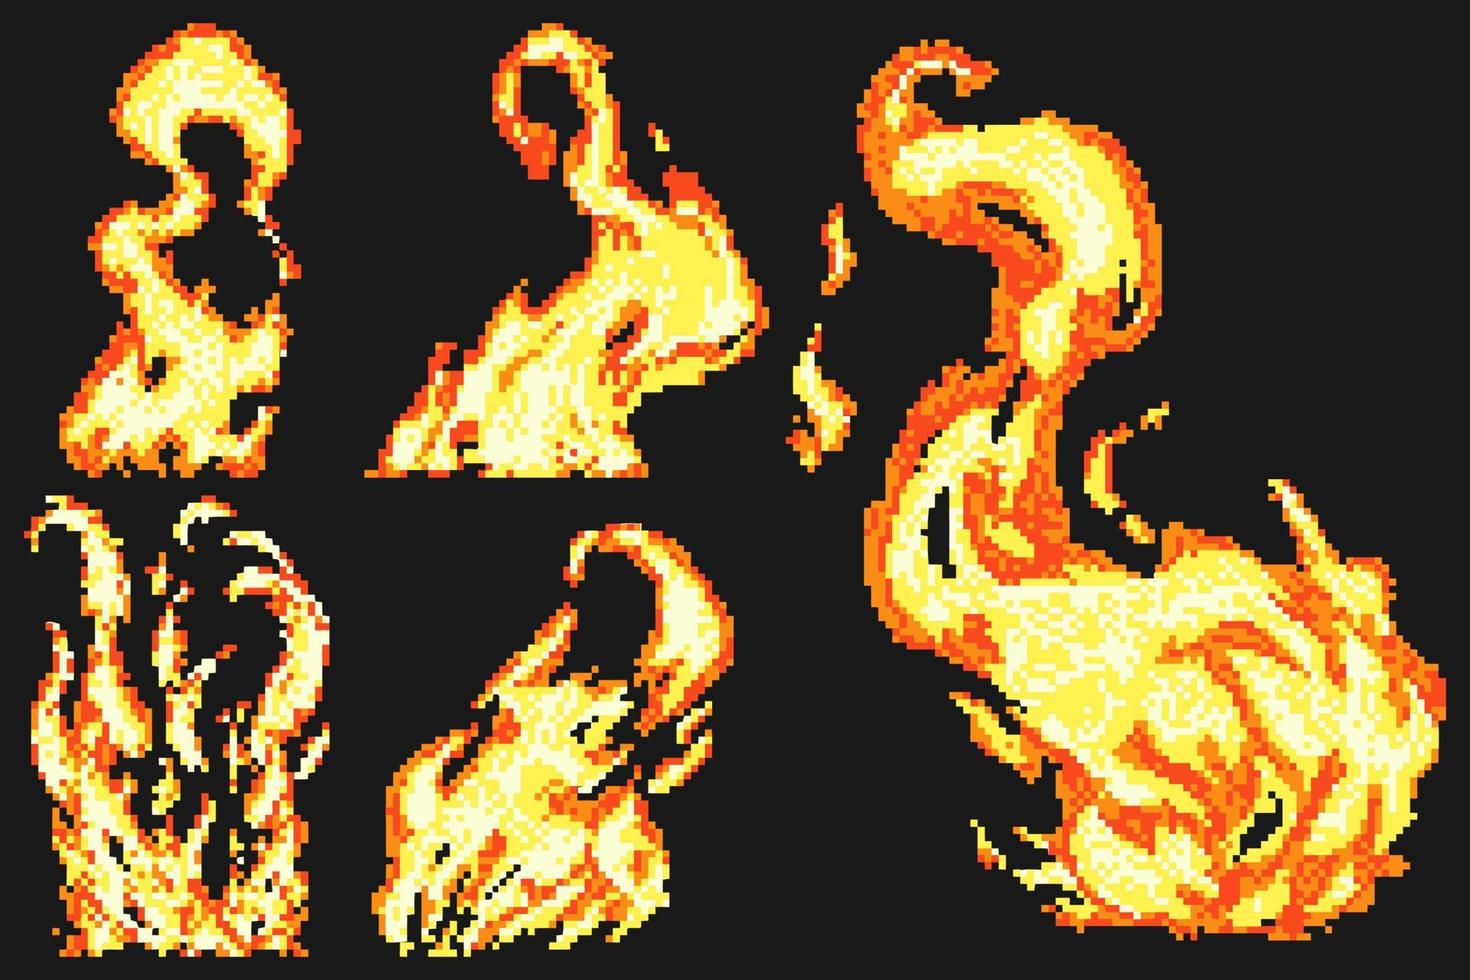 Der Feuerpixel-Kunststil eignet sich perfekt als Grafikeffekt oder Emoticon-Aufkleber vektor